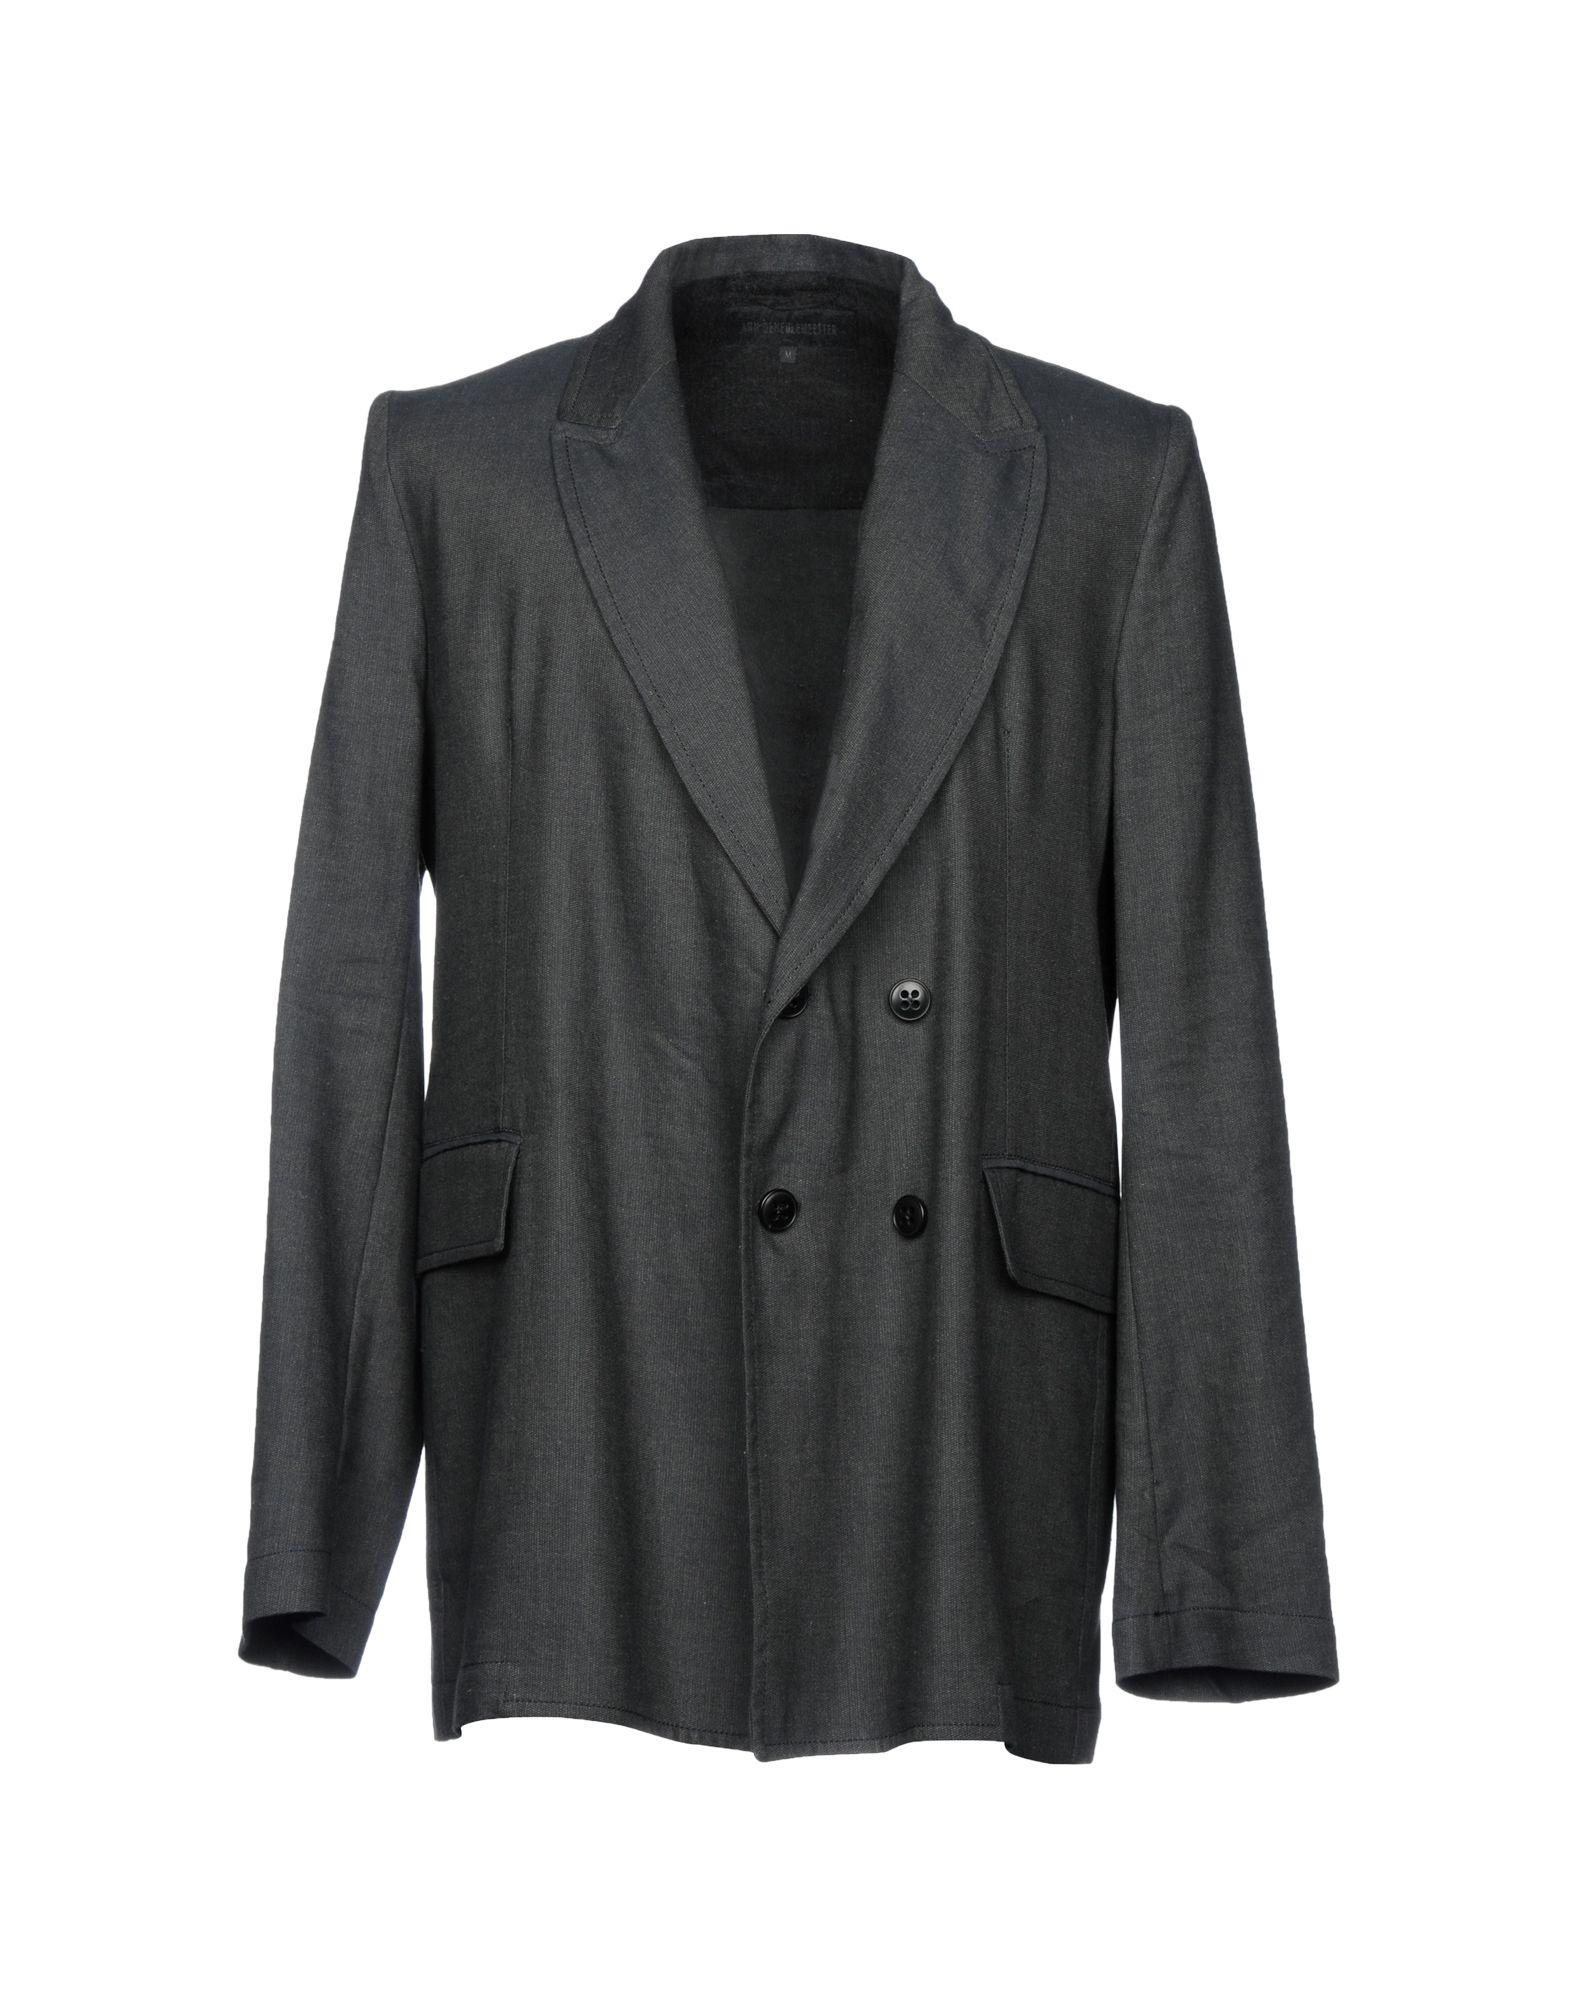 Ann Demeulemeester Linen Blazers in Steel Grey (Gray) for Men - Lyst